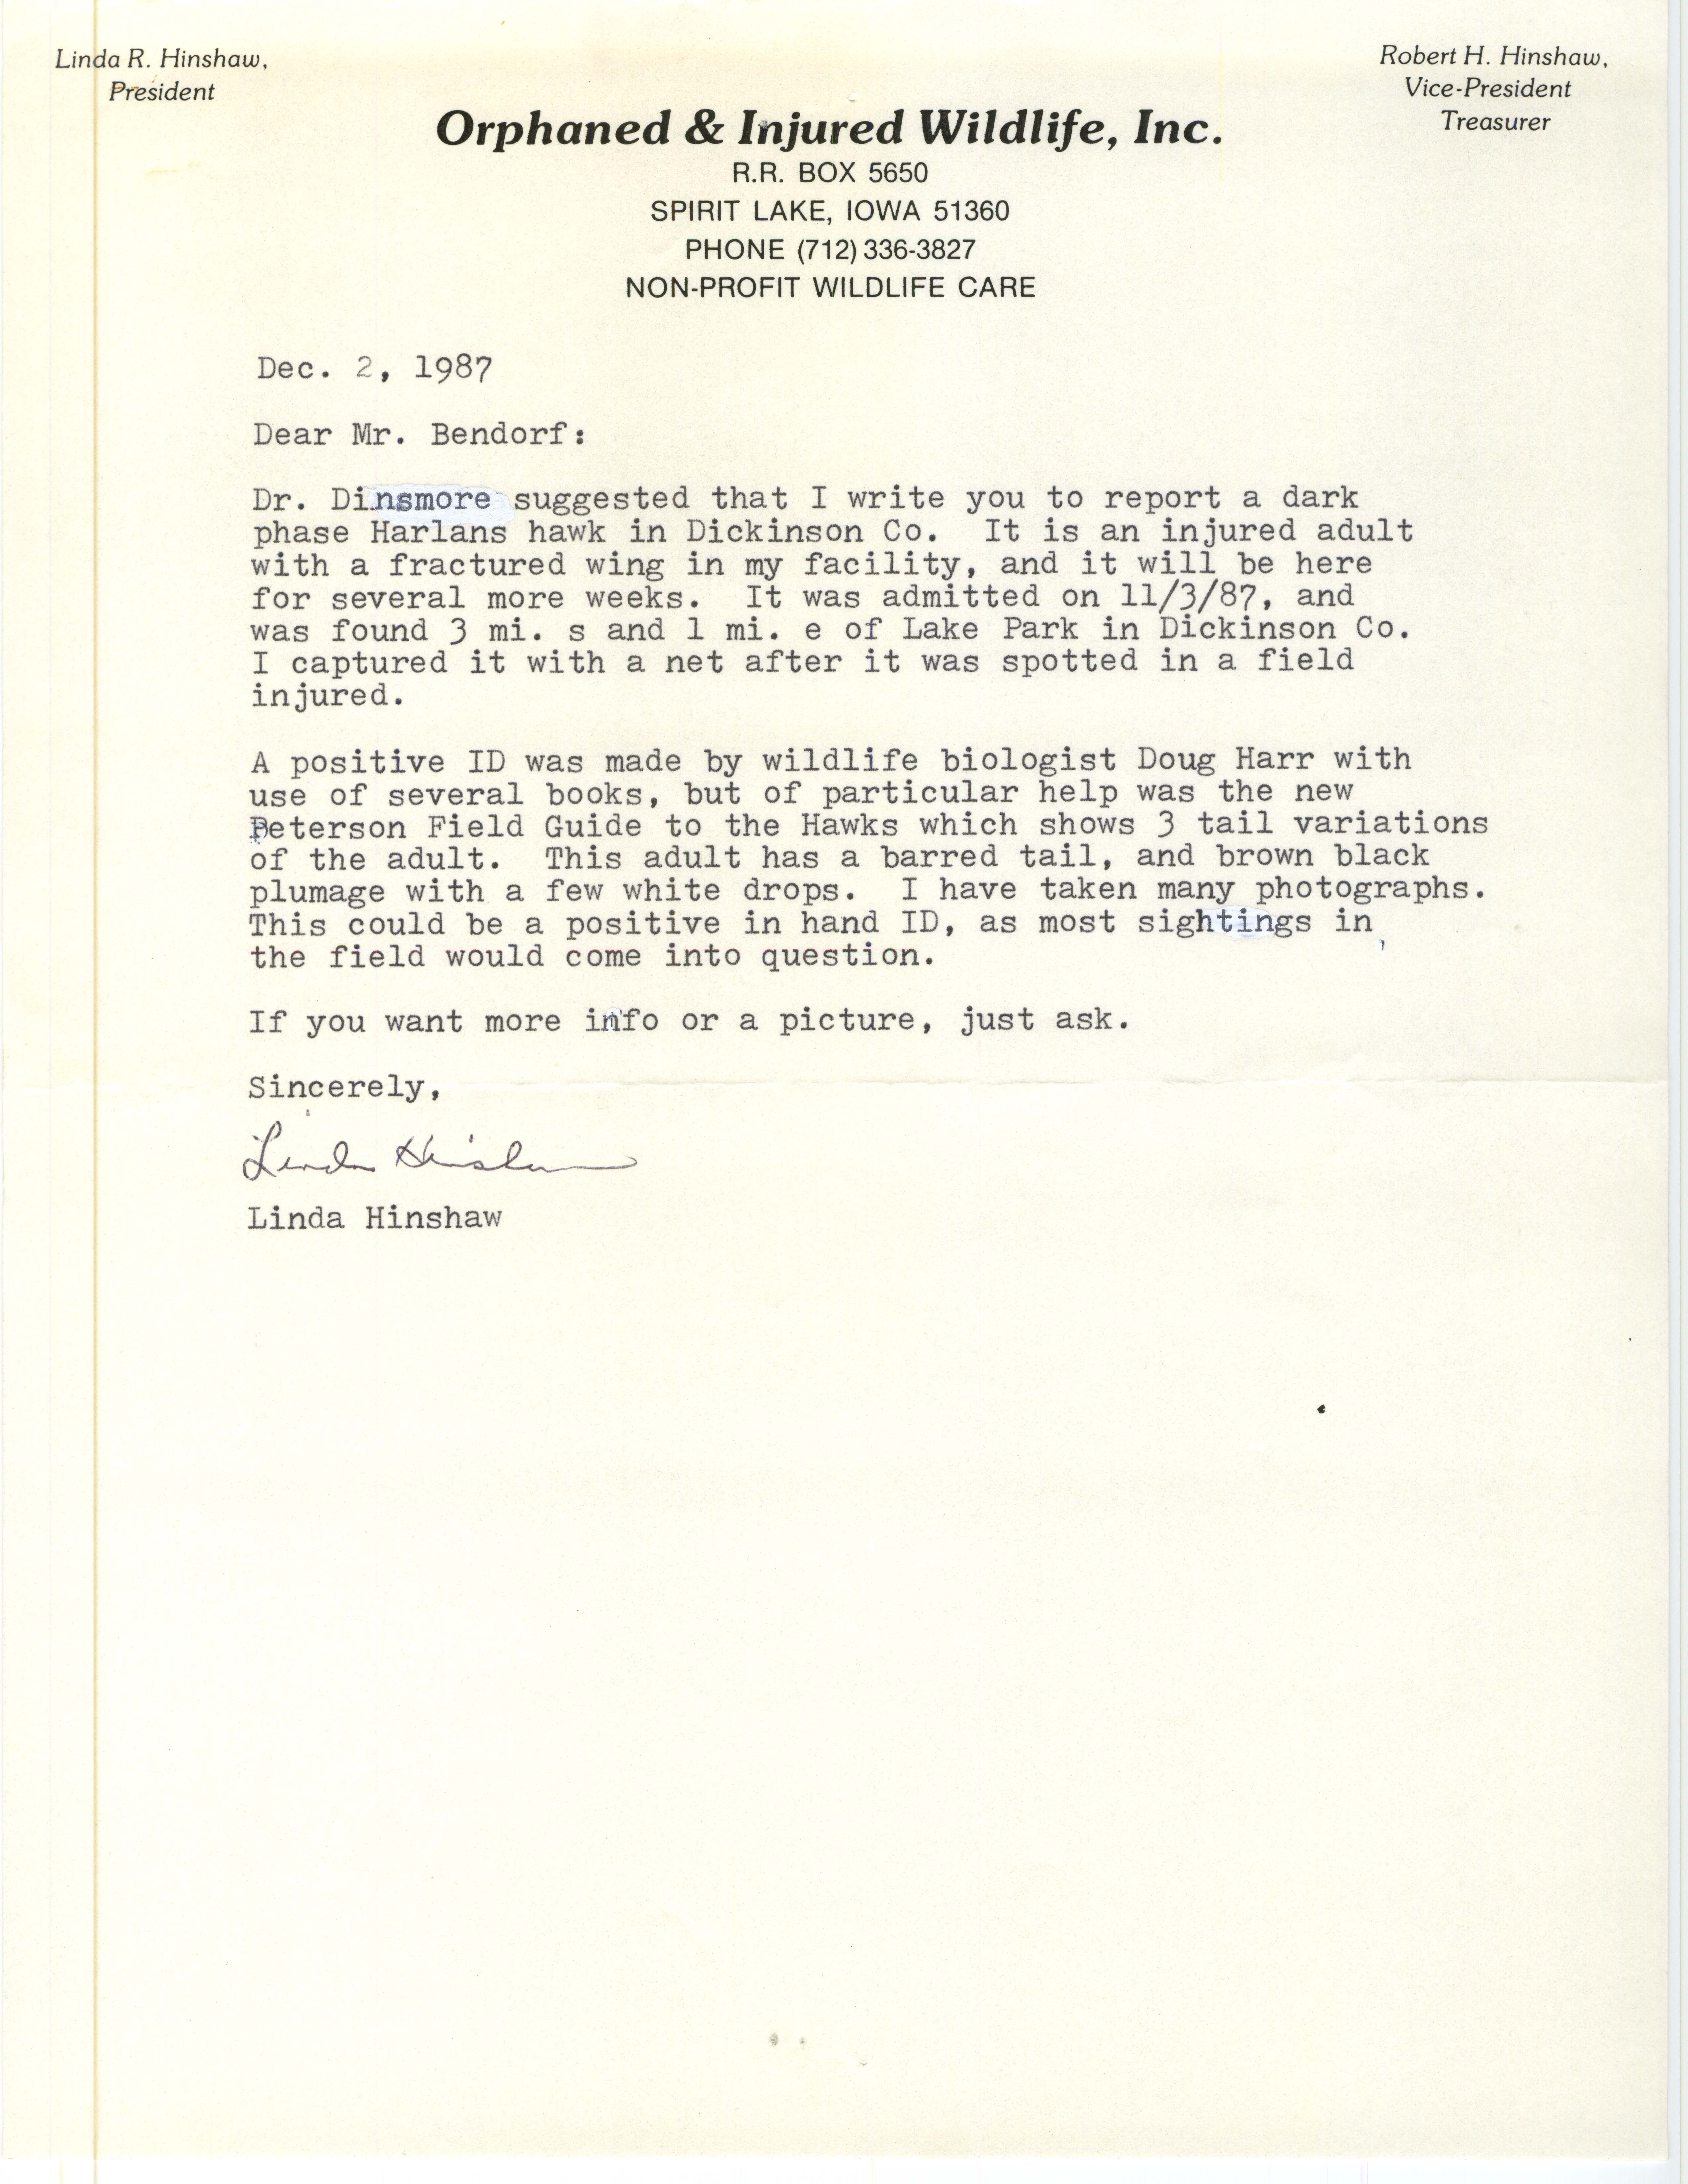 Linda Hinshaw letter to Carl J. Bendorf regarding an injured Red-tailed Hawk (Harlan's Hawk), December 2, 1987